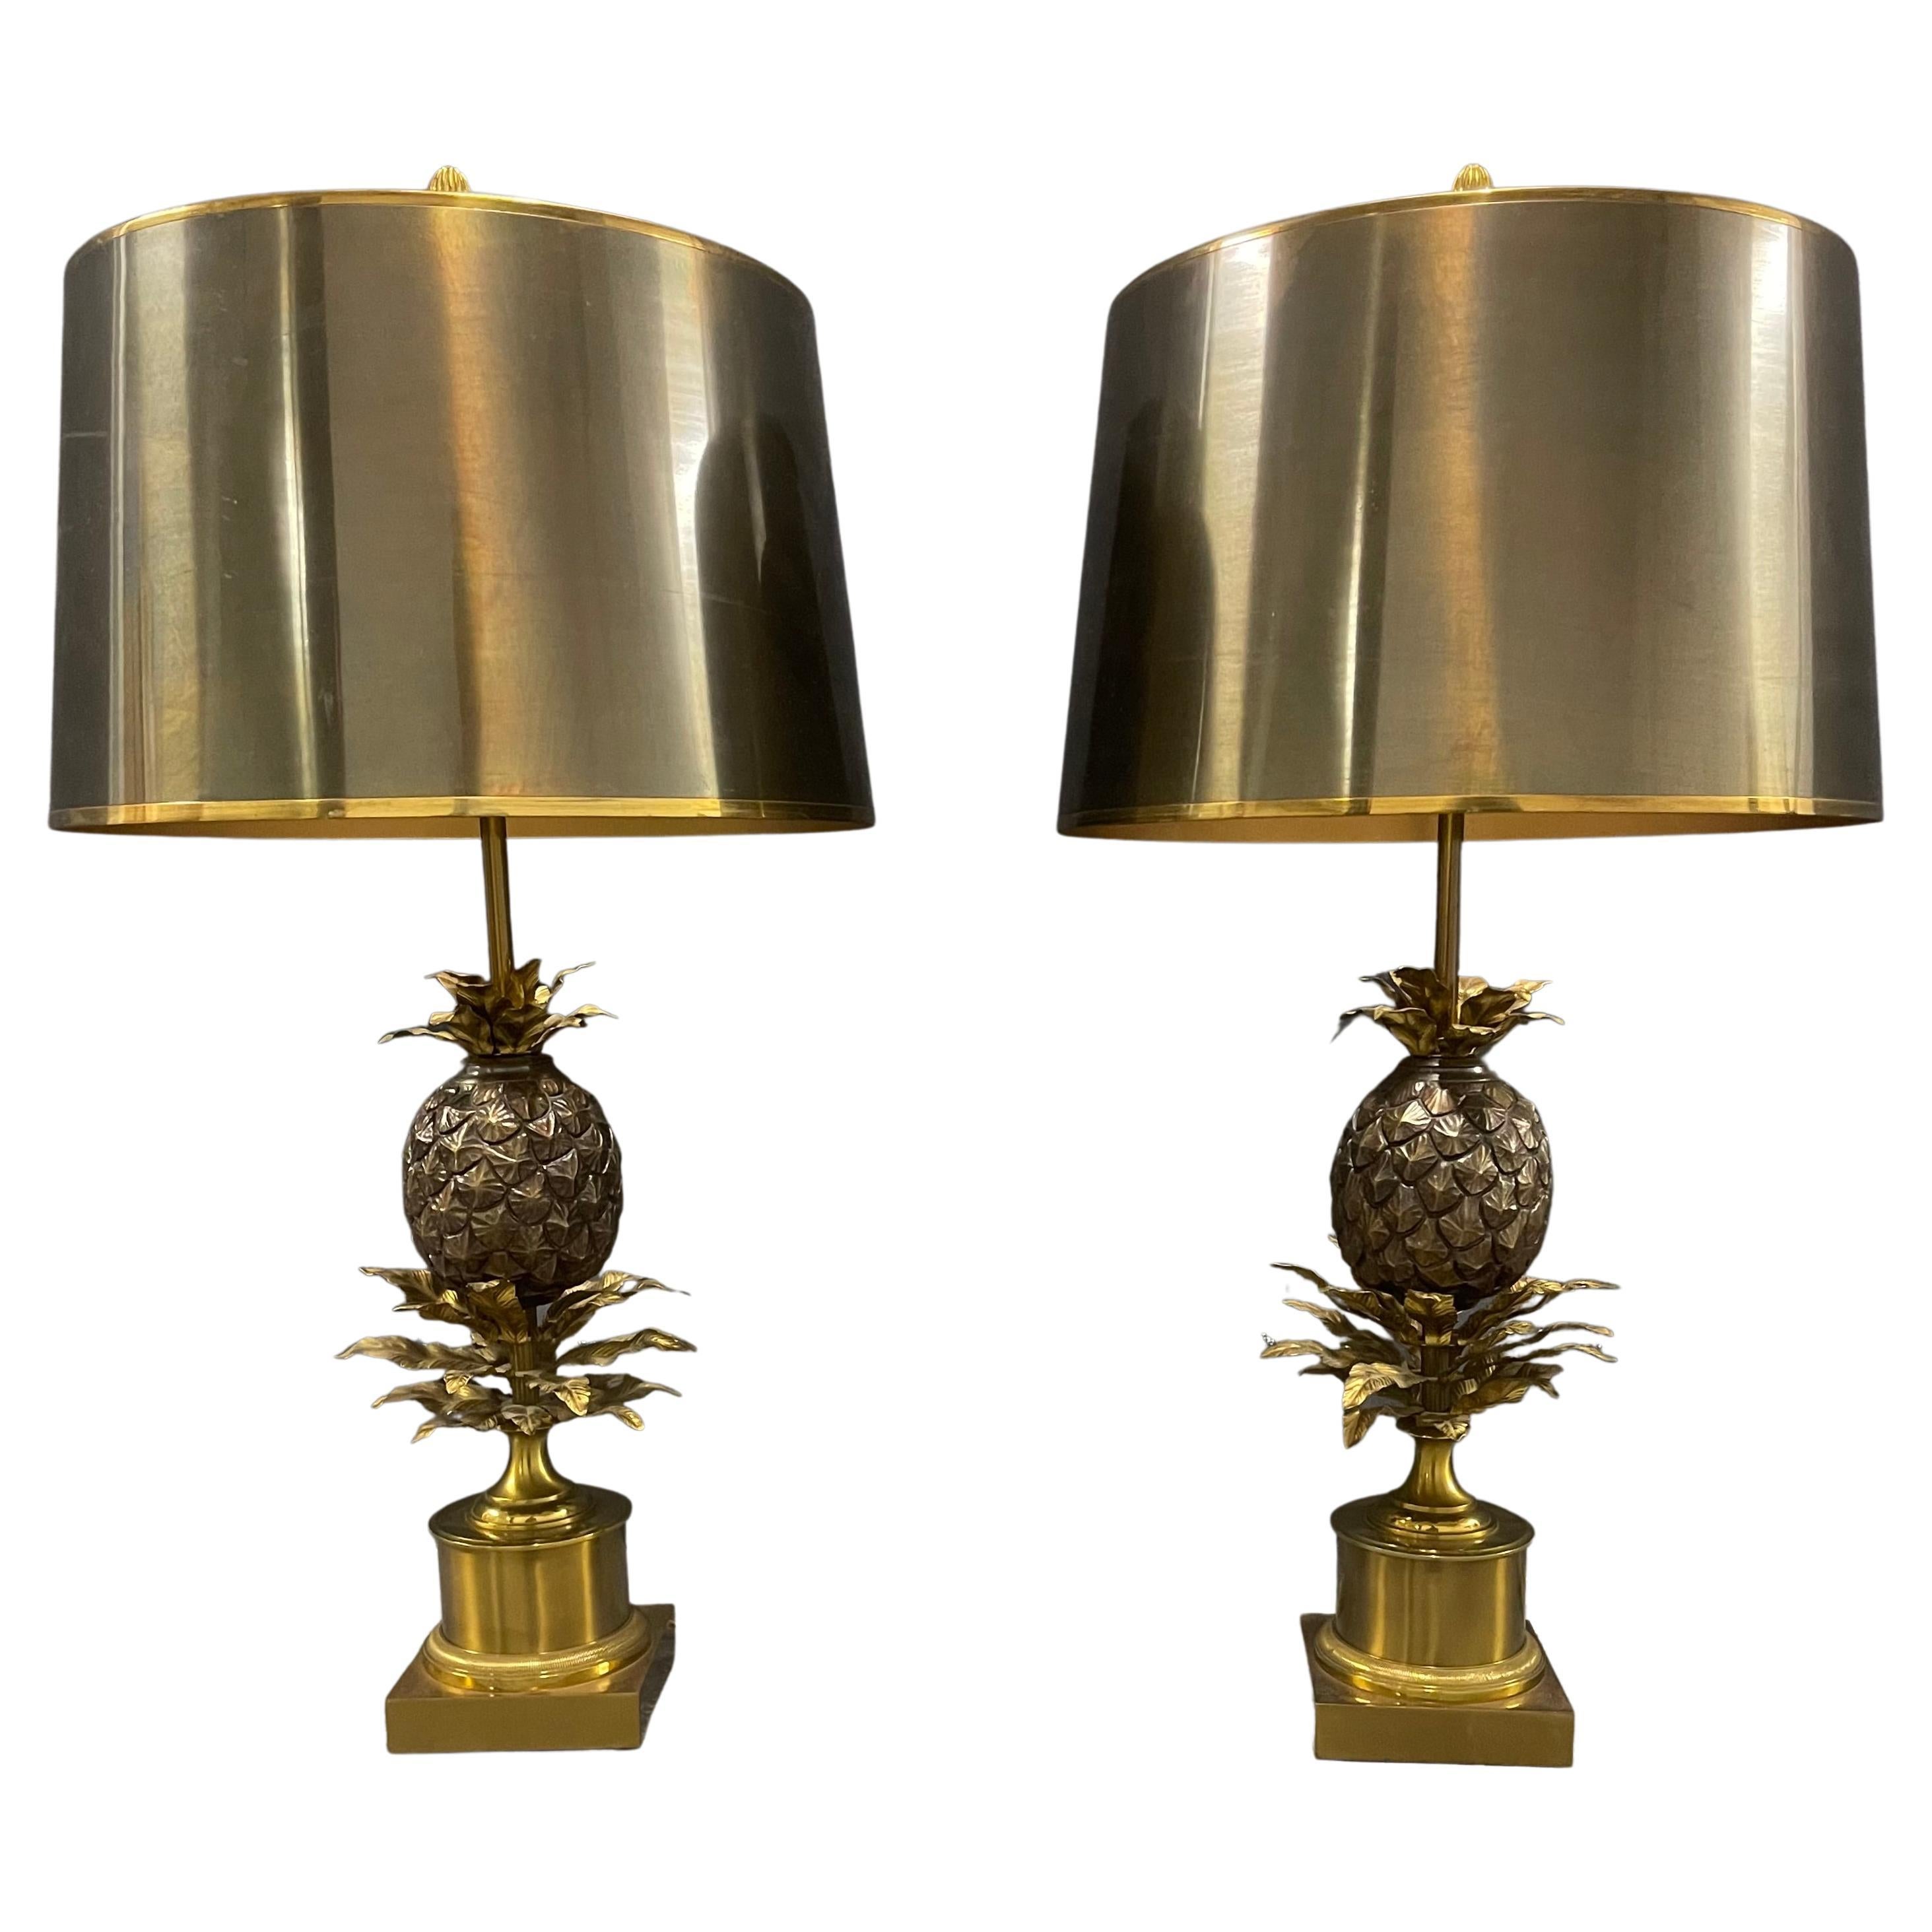 Zwei sehr exklusive, ikonische und beeindruckende Ananas-Lampen aus Maison-Charles